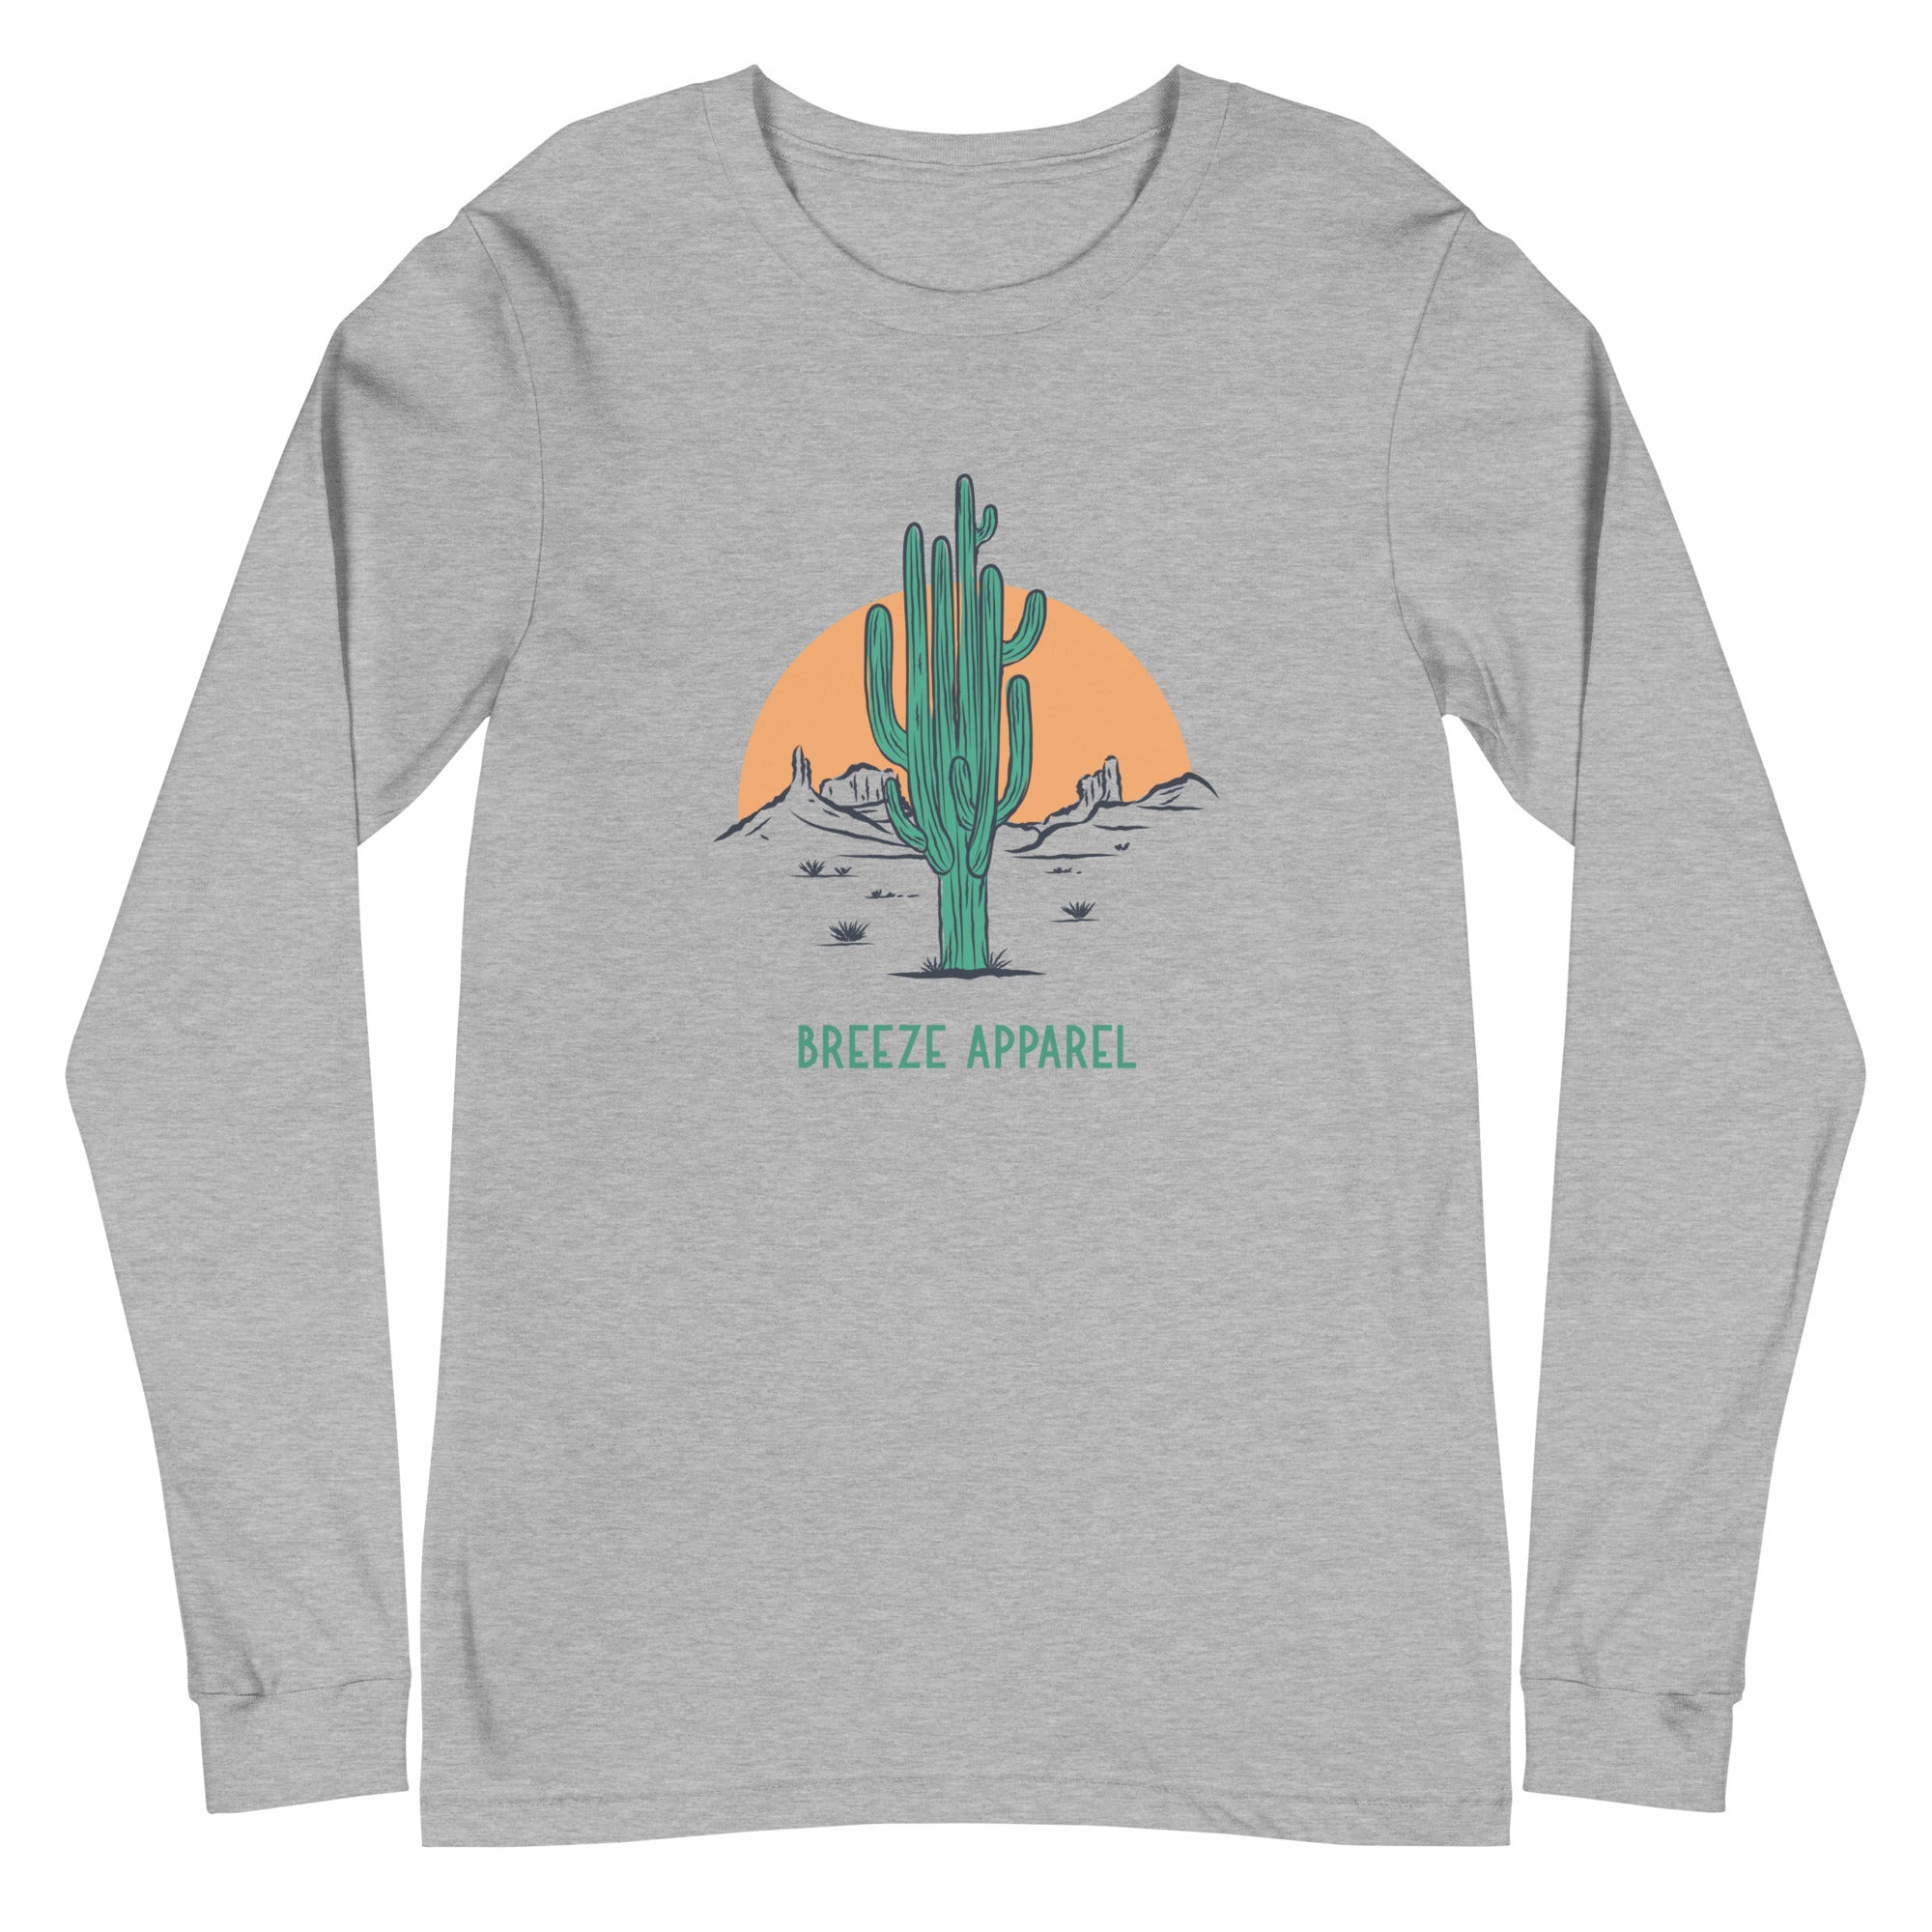 'Cactus Sunset' unisex long-sleeved shirt